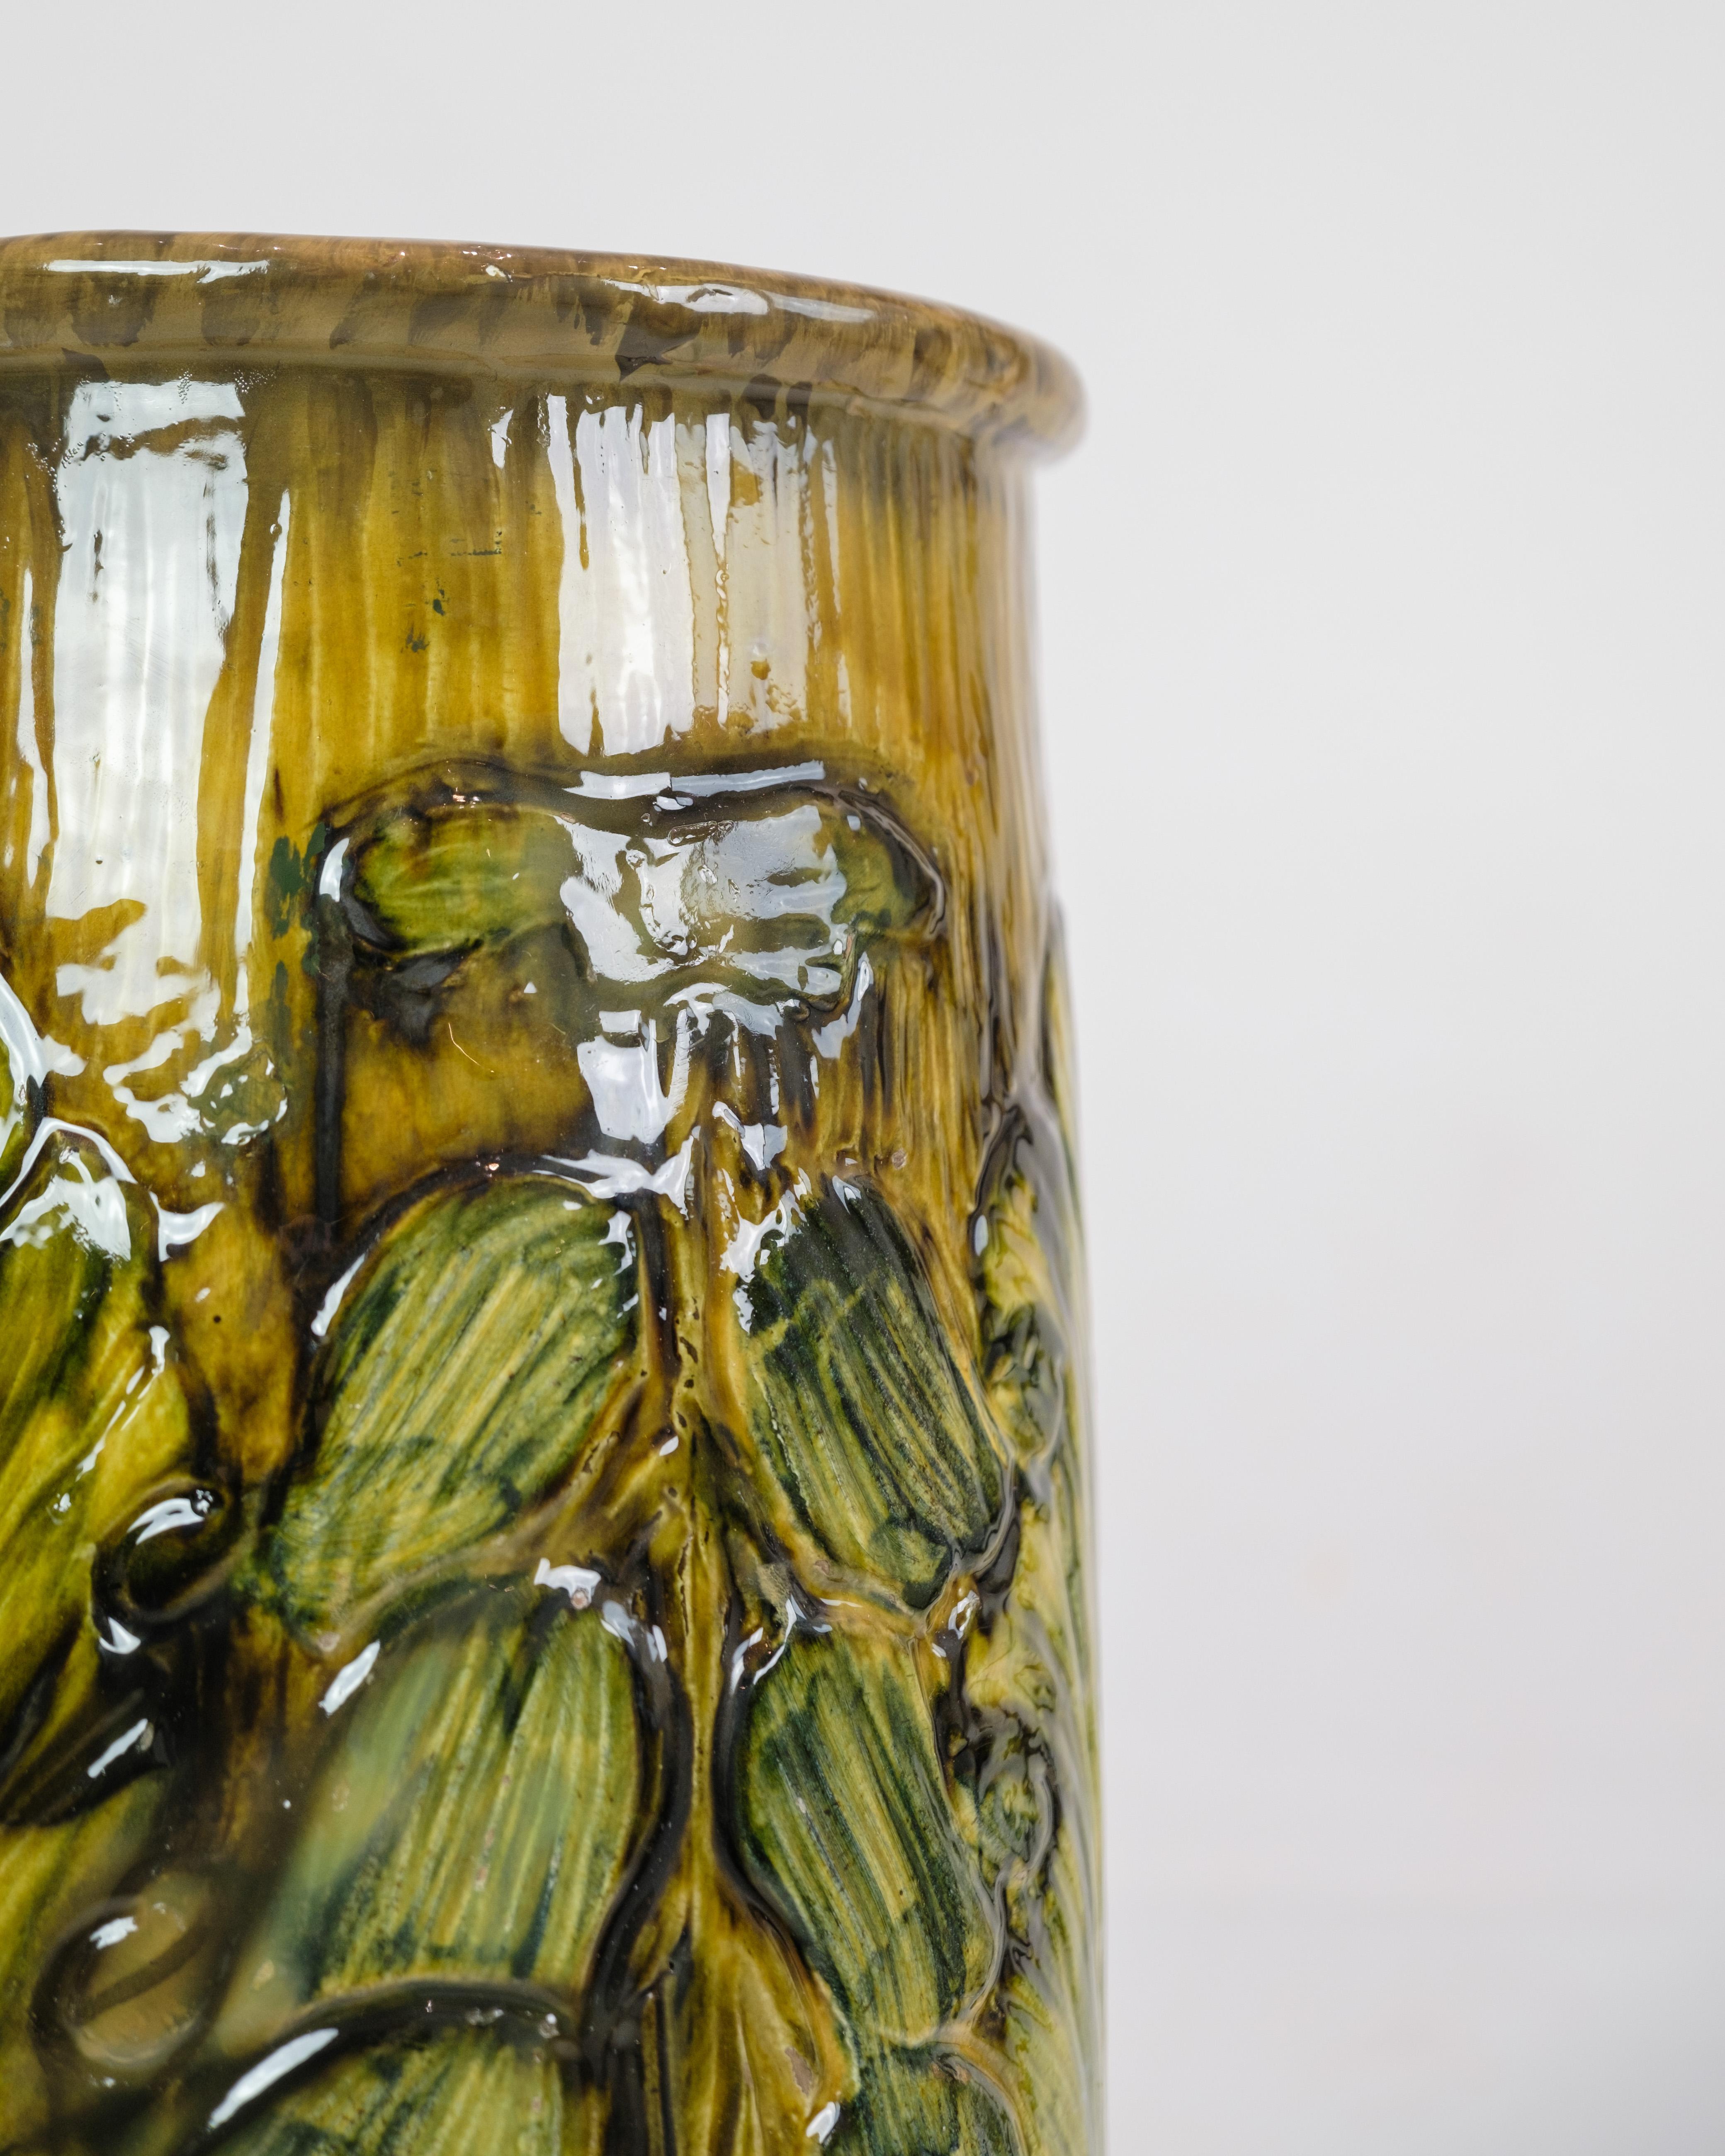 Diese große Bodenvase aus Danico-Keramik ist ein bemerkenswertes Stück aus den 1960er Jahren. Die Vase mit ihrer Mischung aus gelben und grünlichen Farben strahlt eine einzigartige und lebendige Ästhetik aus, die für diese Epoche charakteristisch